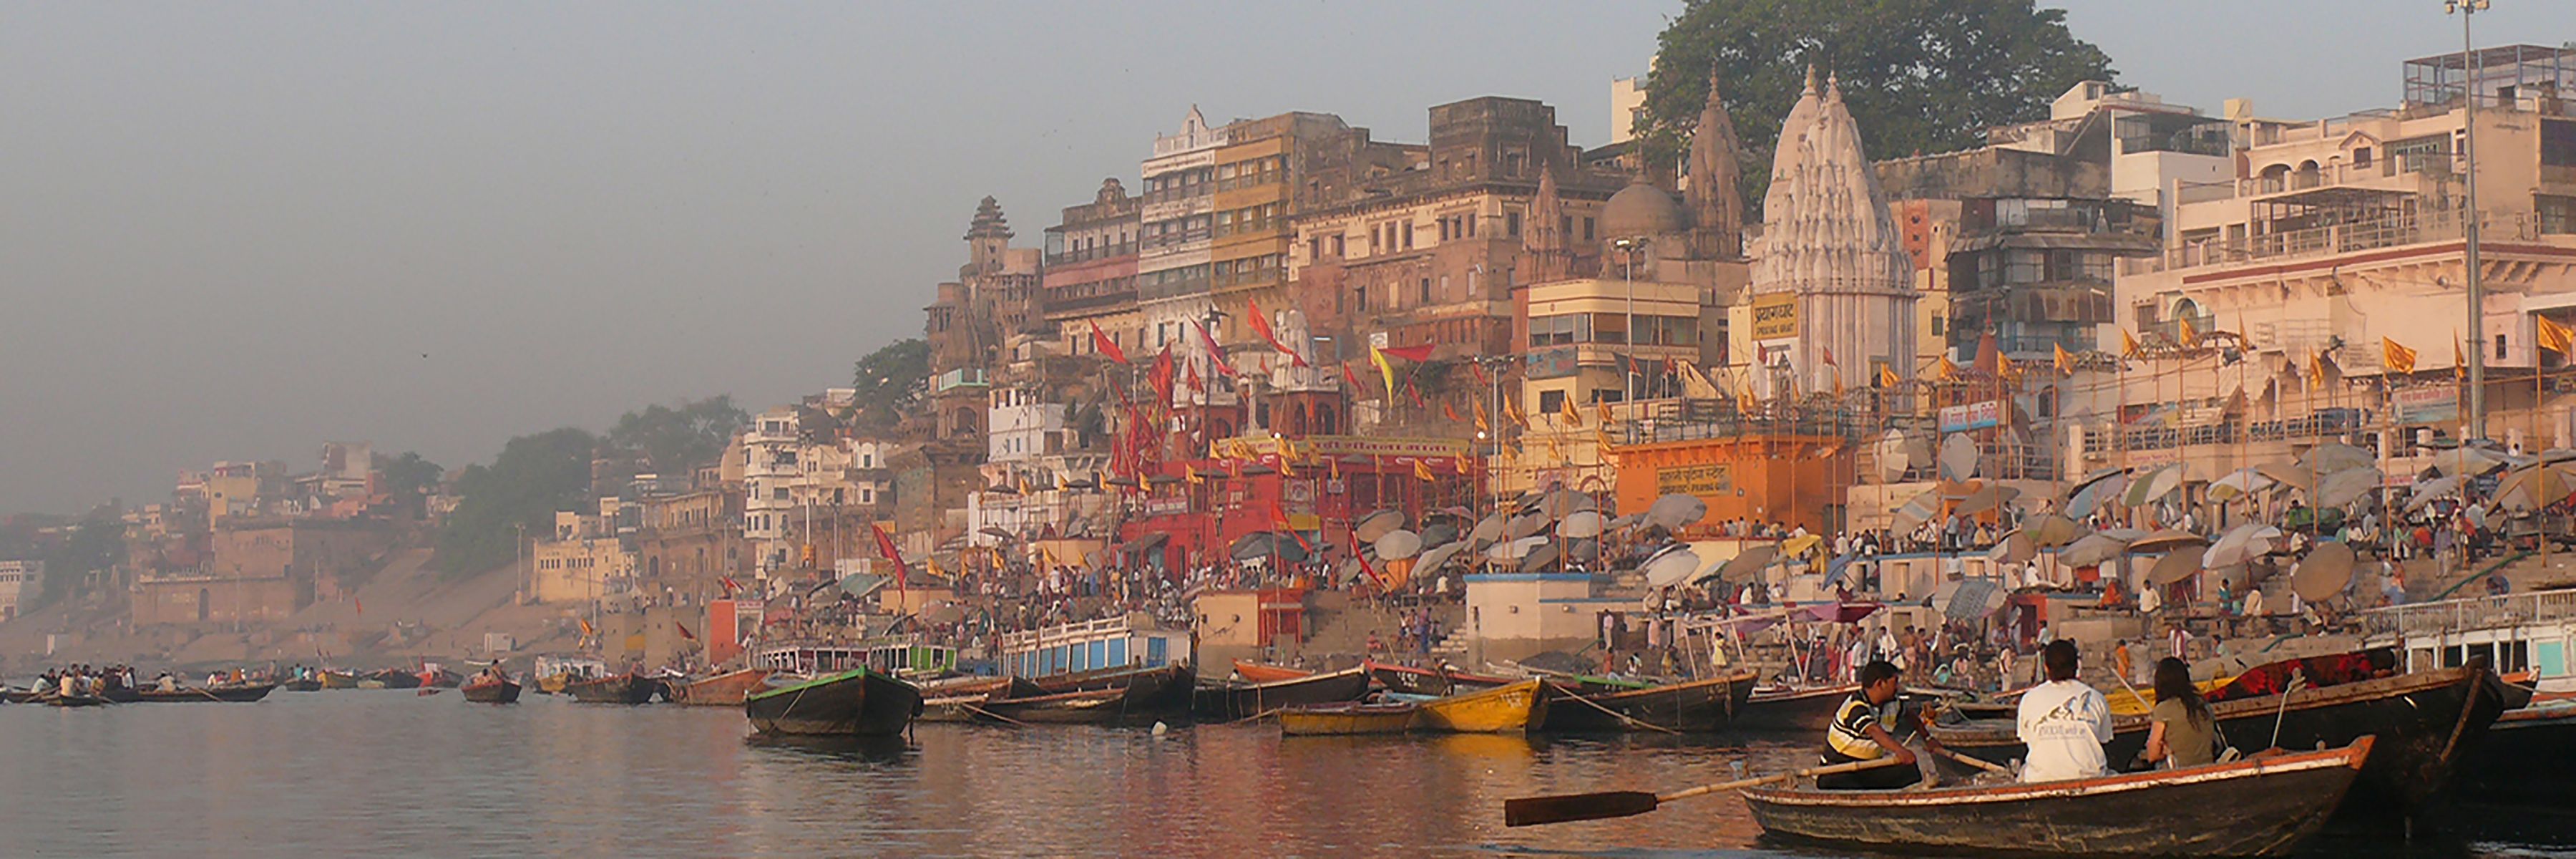 grosses Bild_Varanasi